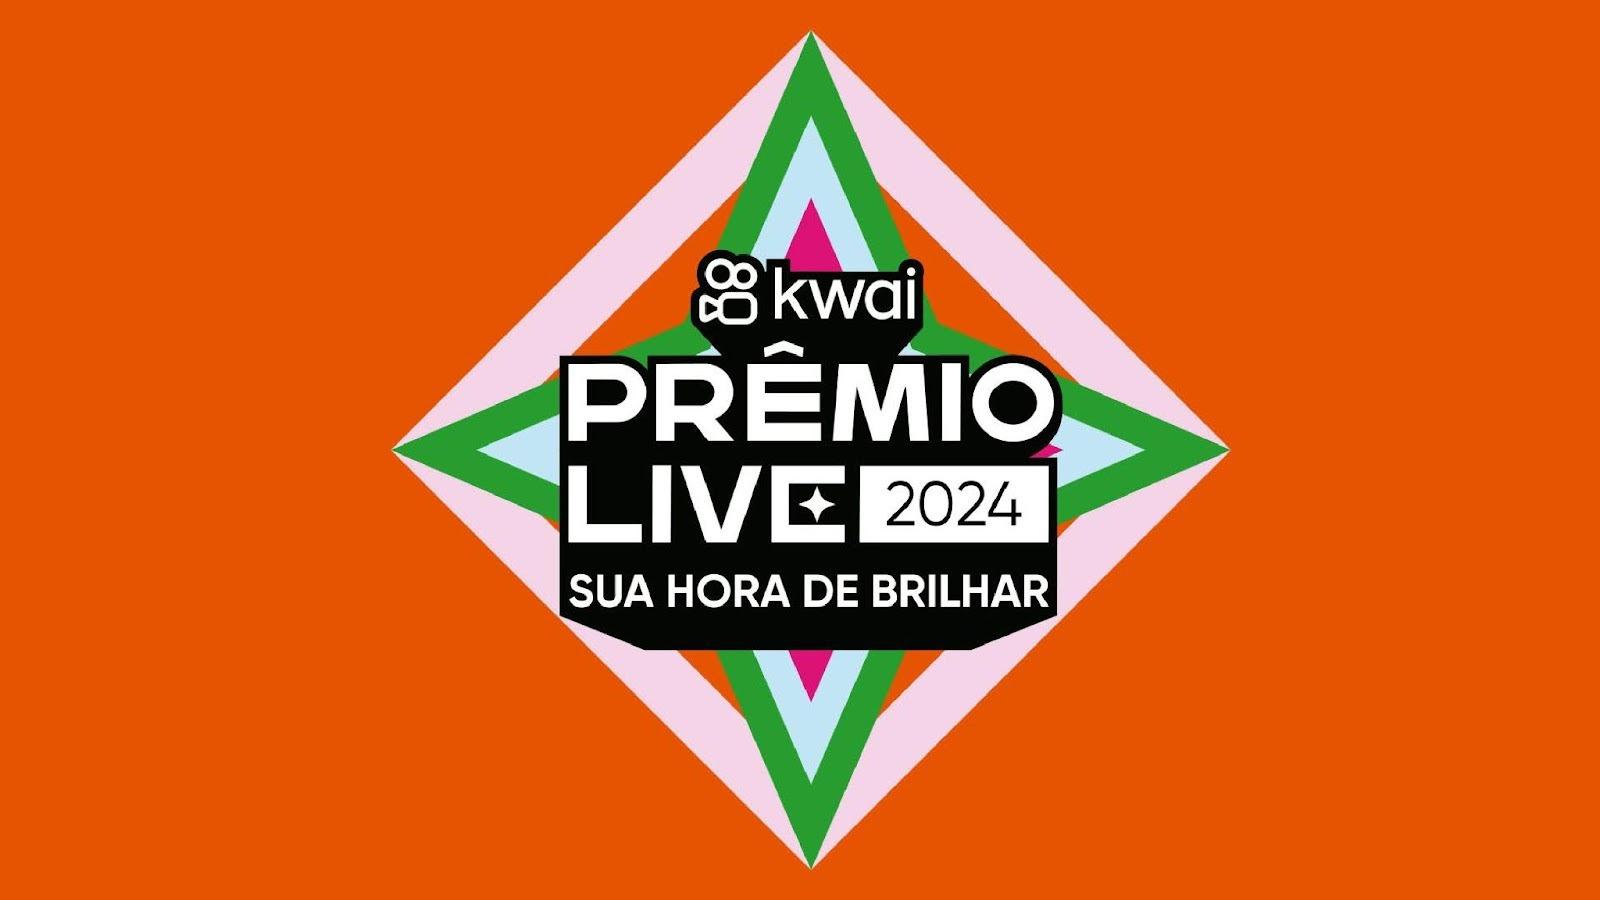 Kwai celebra o sucesso do streaming brasileiro com o Prêmio Live Kwai 2024